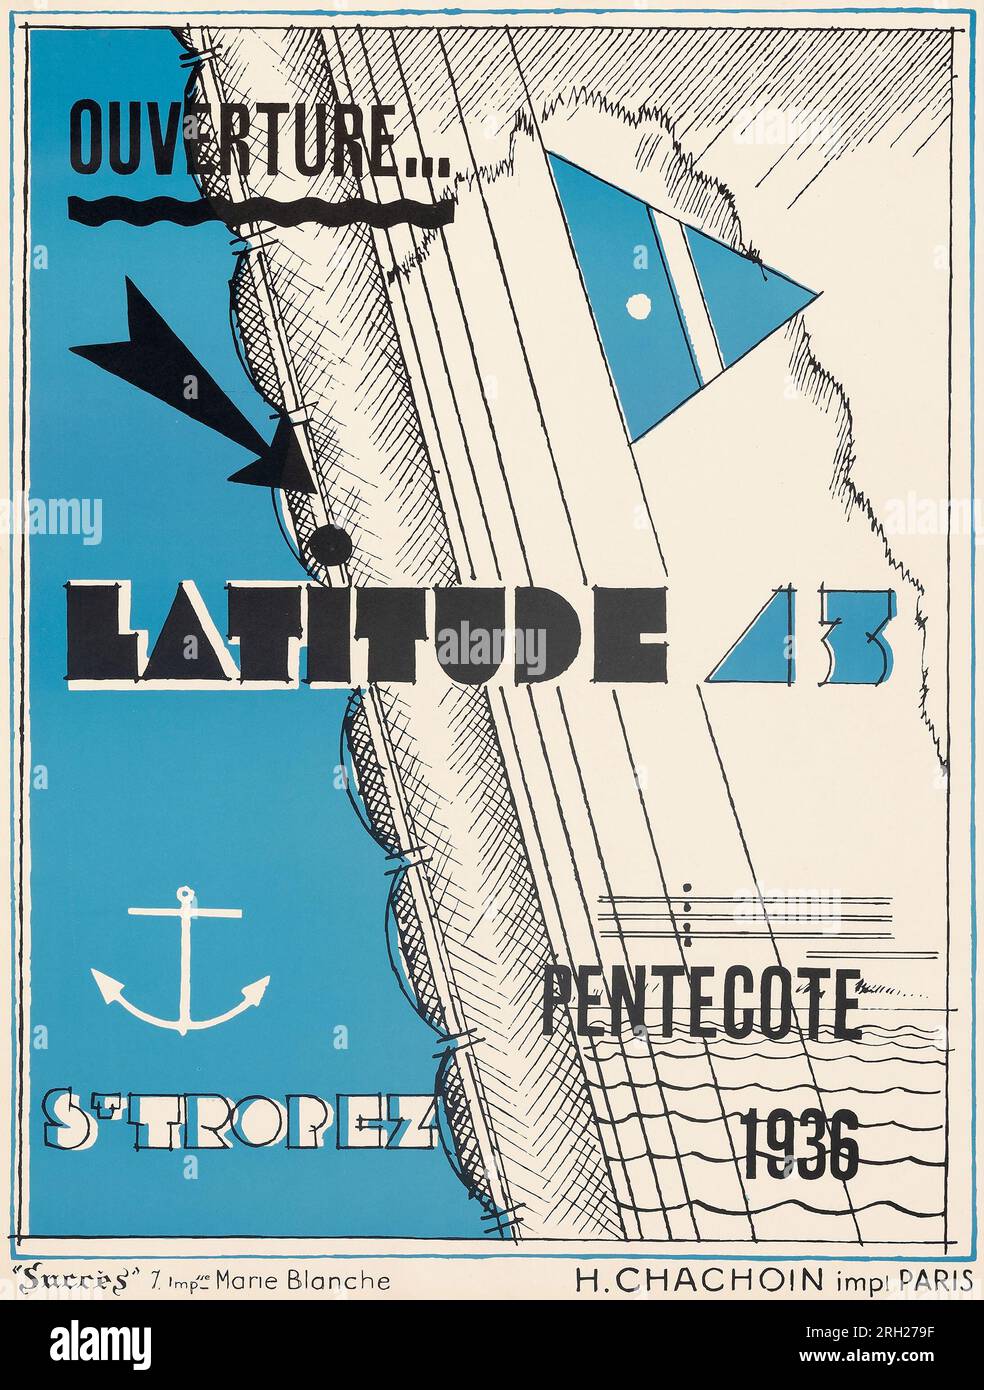 Affiche de voyage vintage - Latitude 43 à Saint-Tropez, Pentecote, France (1936) artiste inconnu. Banque D'Images